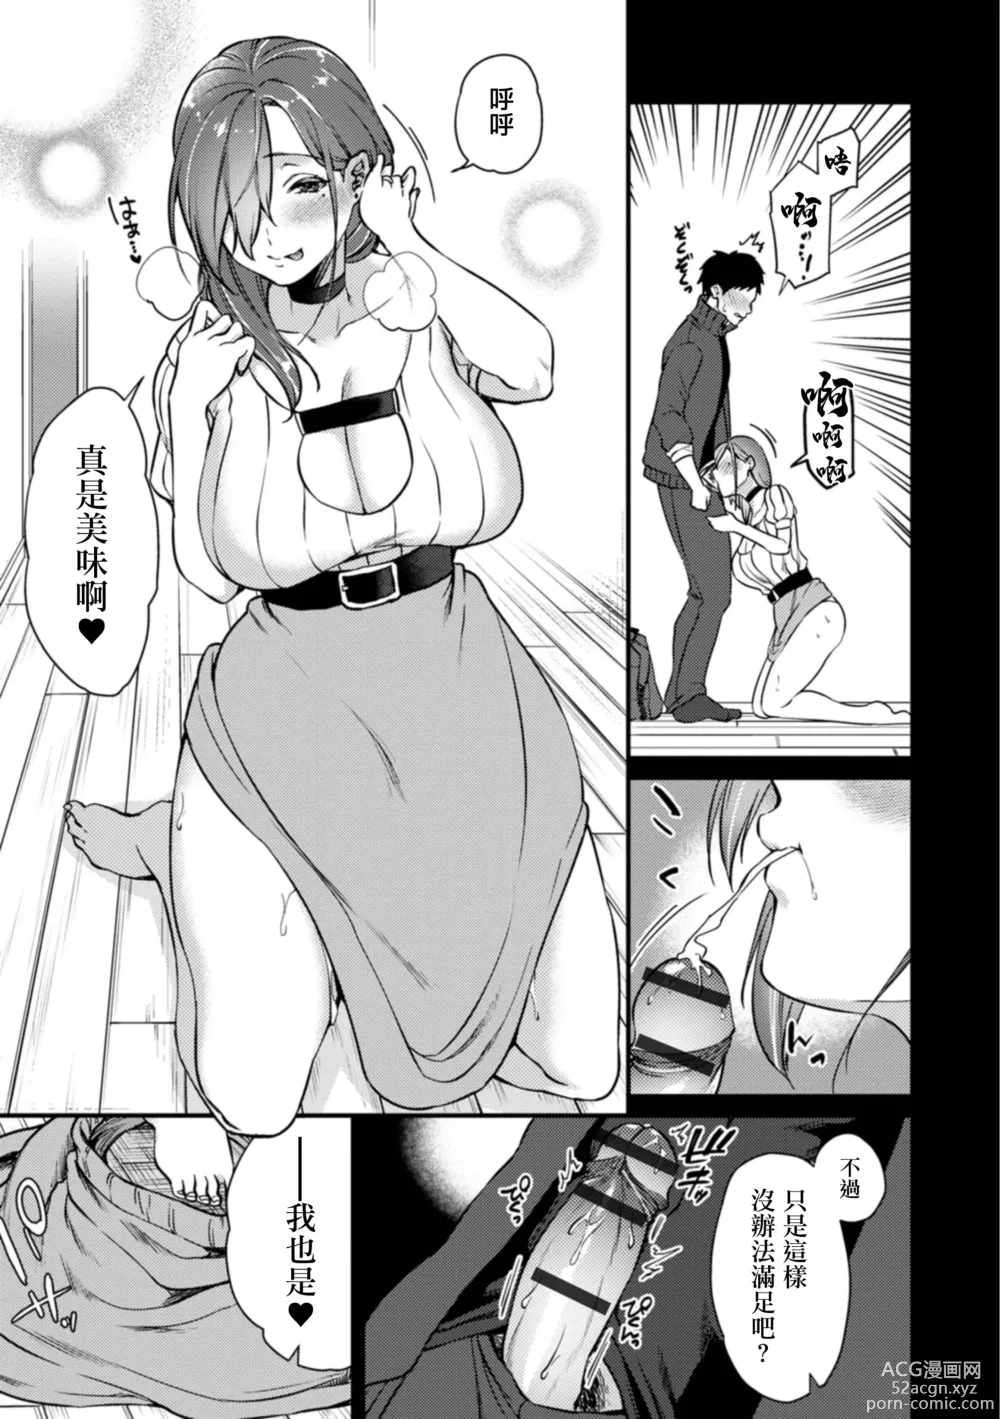 Page 7 of manga Karasu no Onna